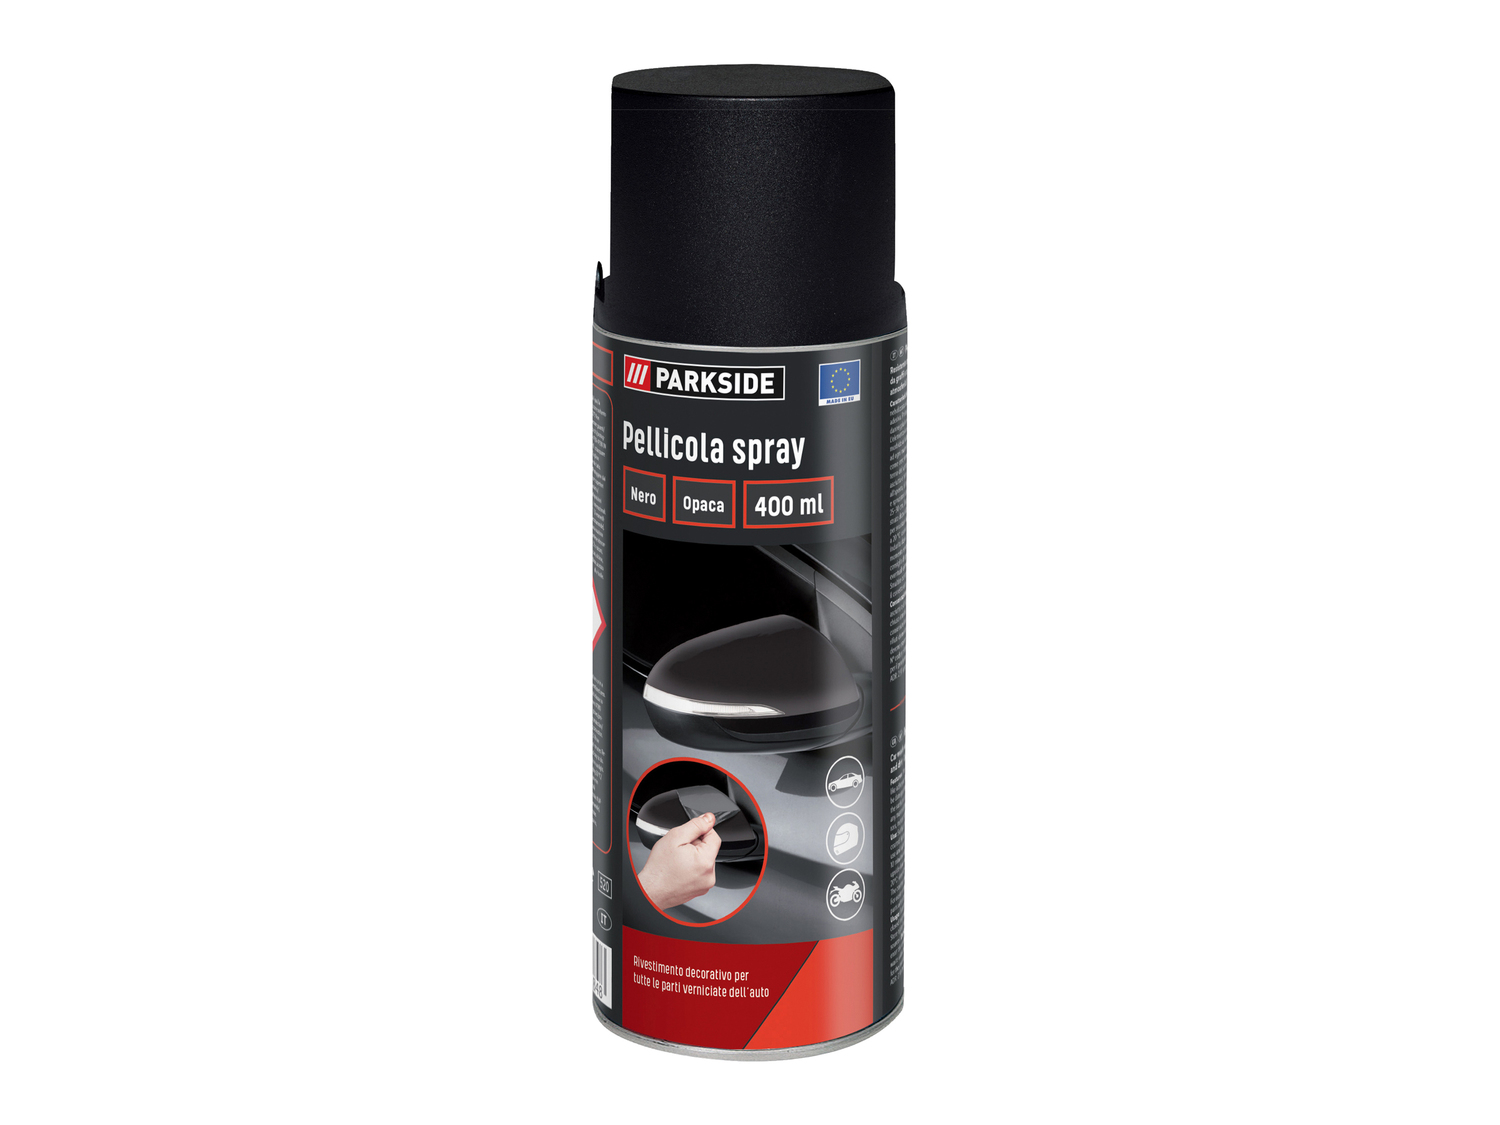 Pellicola spray Parkside, prezzo 7.99 € 
400 ml 
- La pellicola si posa dove ...